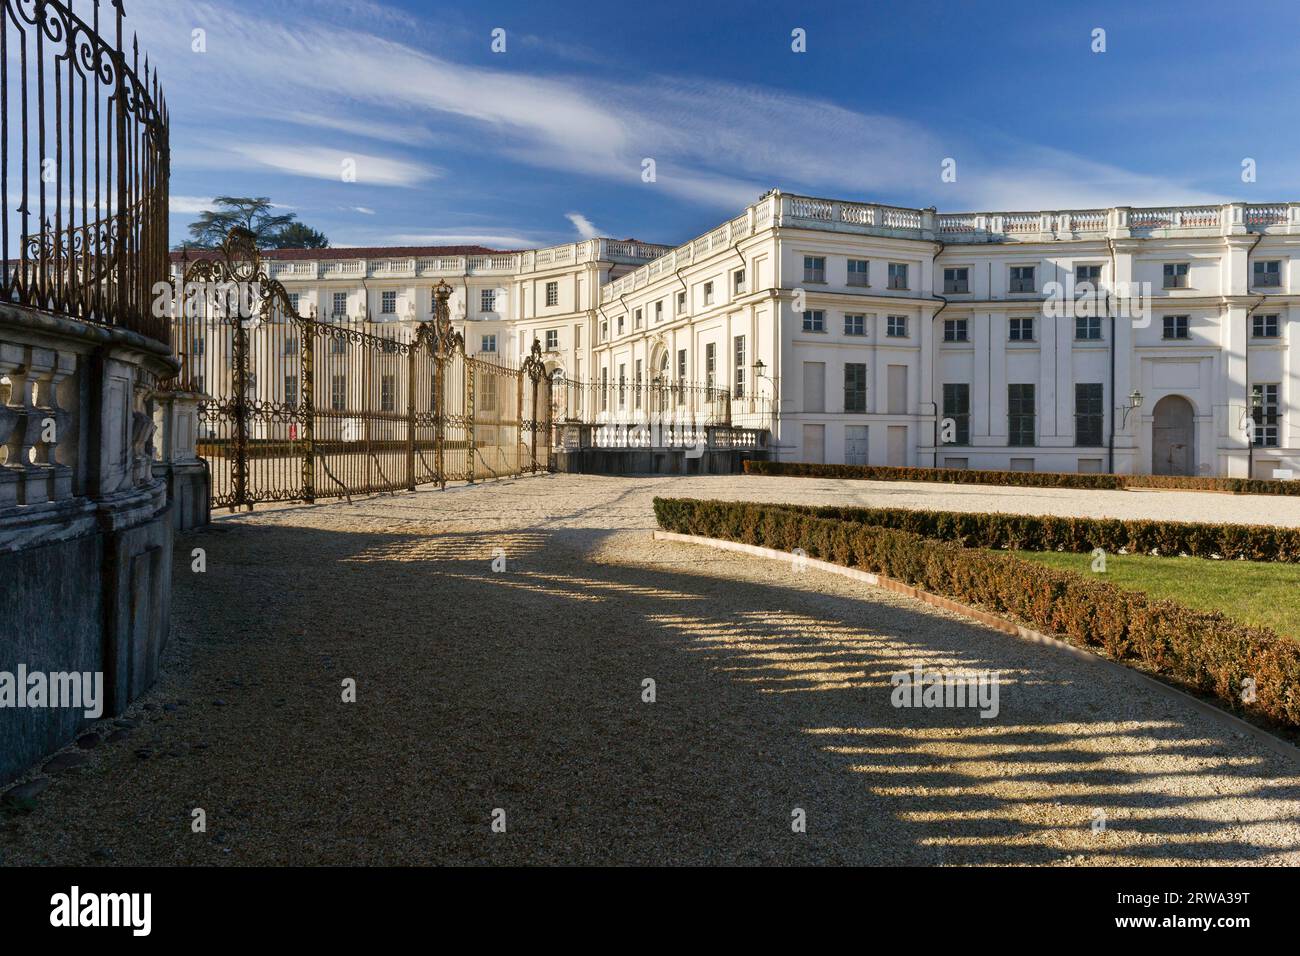 La casetta di caccia barocca Palazzina di caccia di Stupinigi dei Duchi di Savoia, a sud di Torino, fu costruita dall'architetto di corte Filippo Juvarra Foto Stock